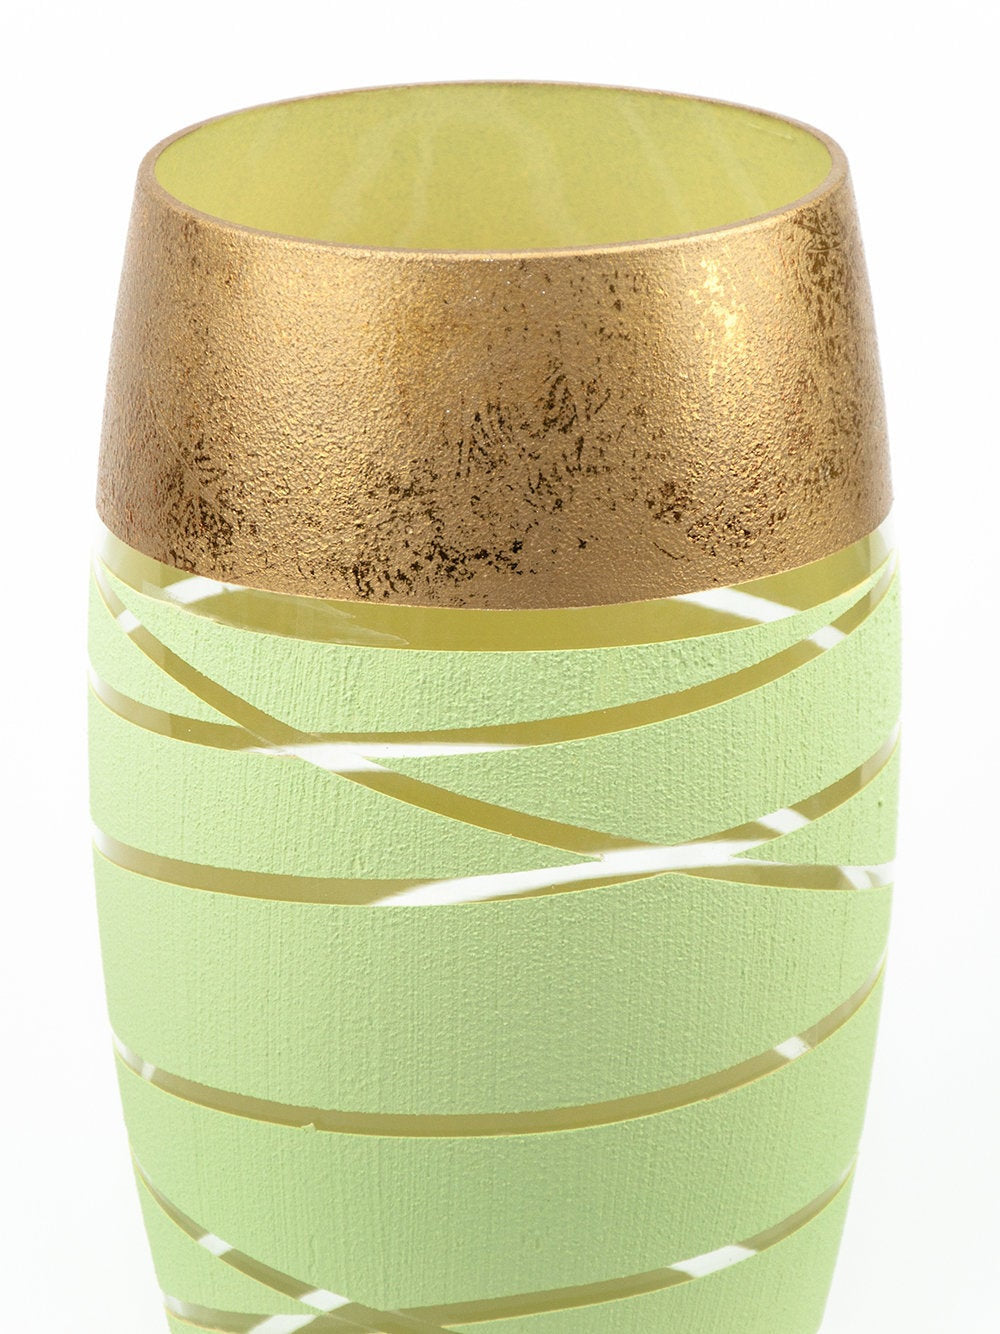 B2 STUDIO Handpainted Oval Glass Vase (Gentle Green)